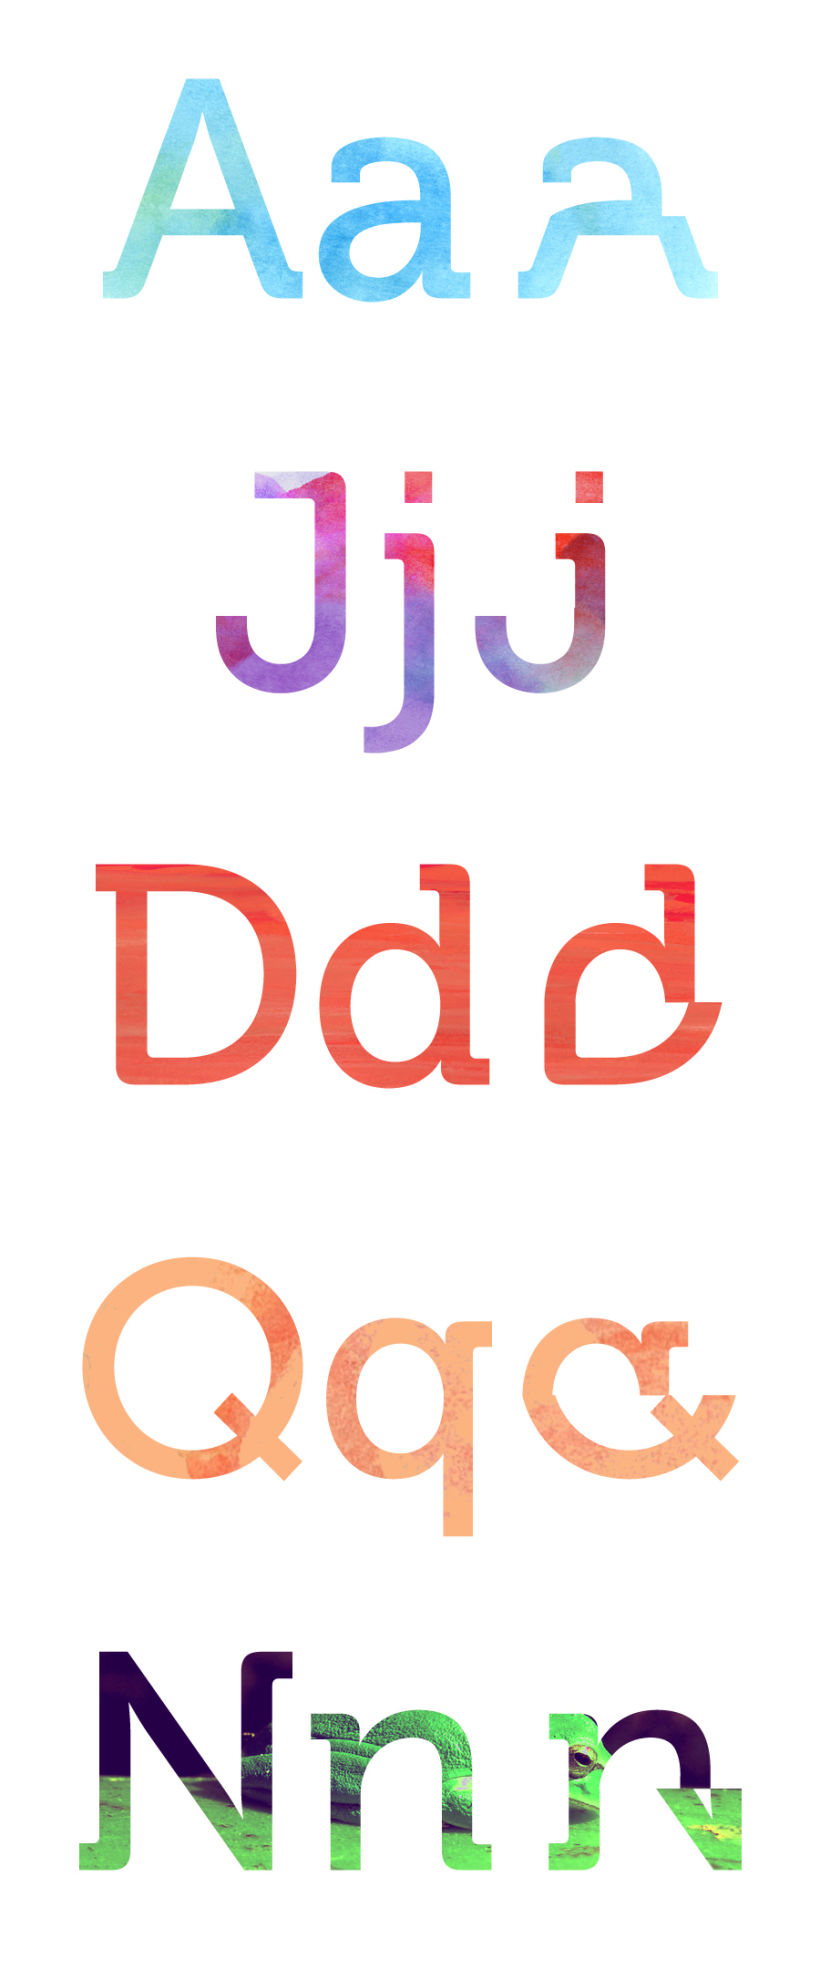  ¿Qué pasa si combinamos mayúsculas y minúsculas en al misma tipografía? 4